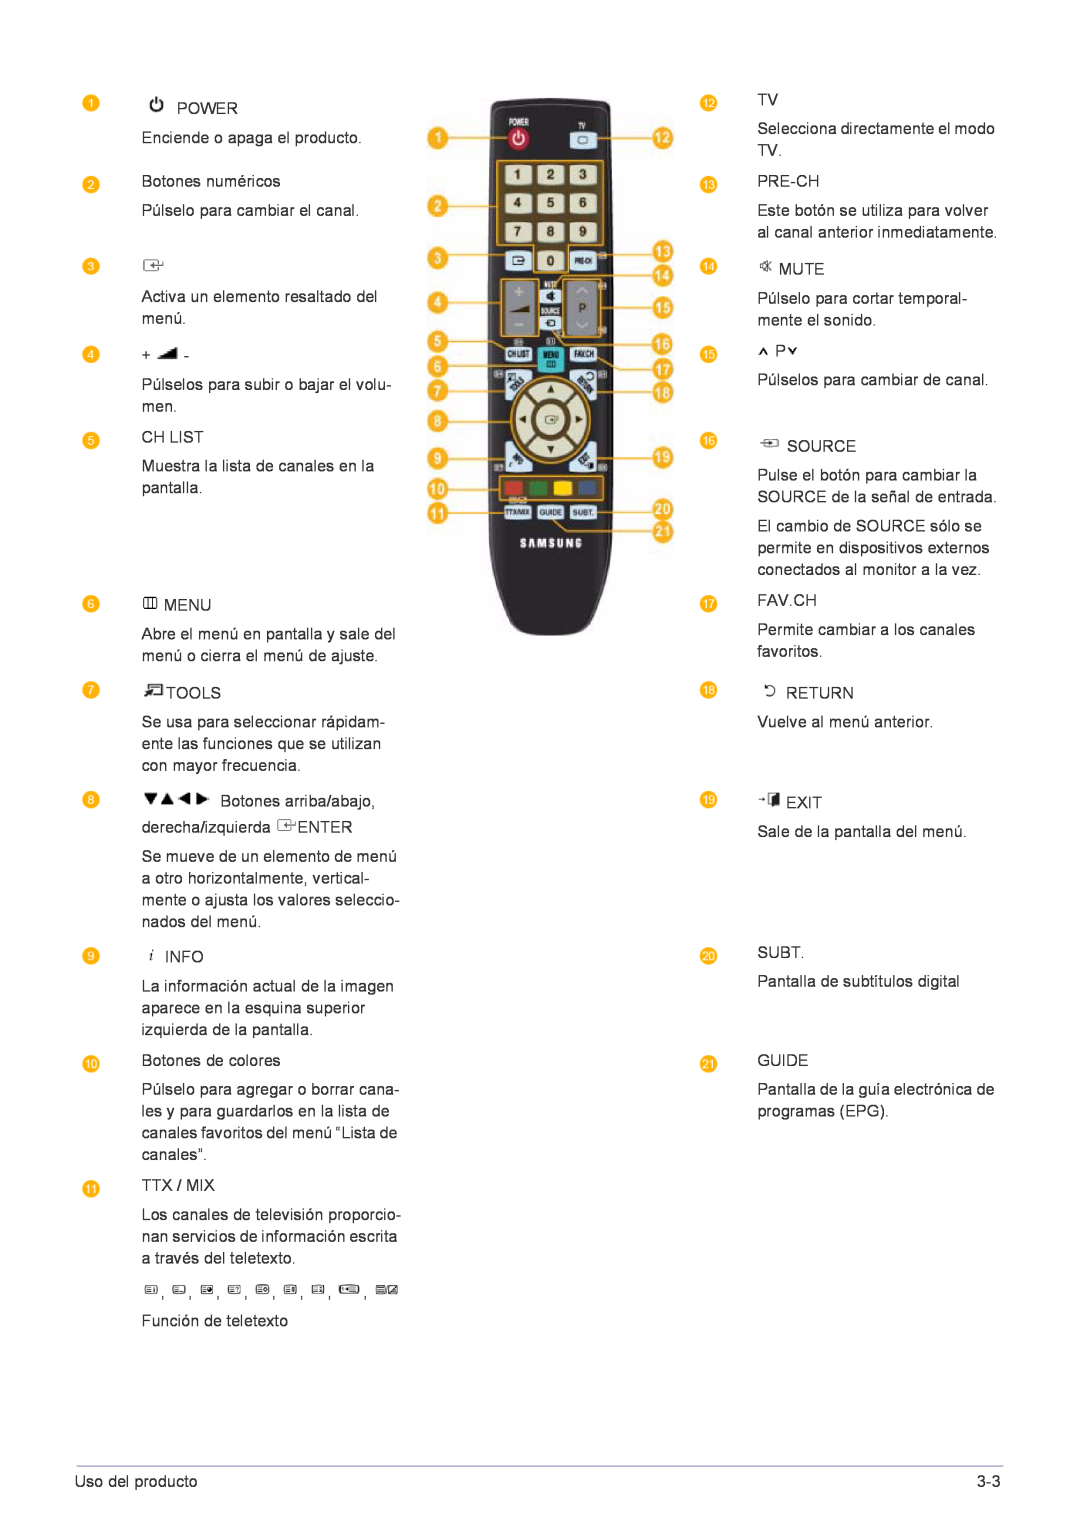 Samsung LS22FMDGF/EN manual Este botón se utiliza para volver al canal anterior inmediatamente 